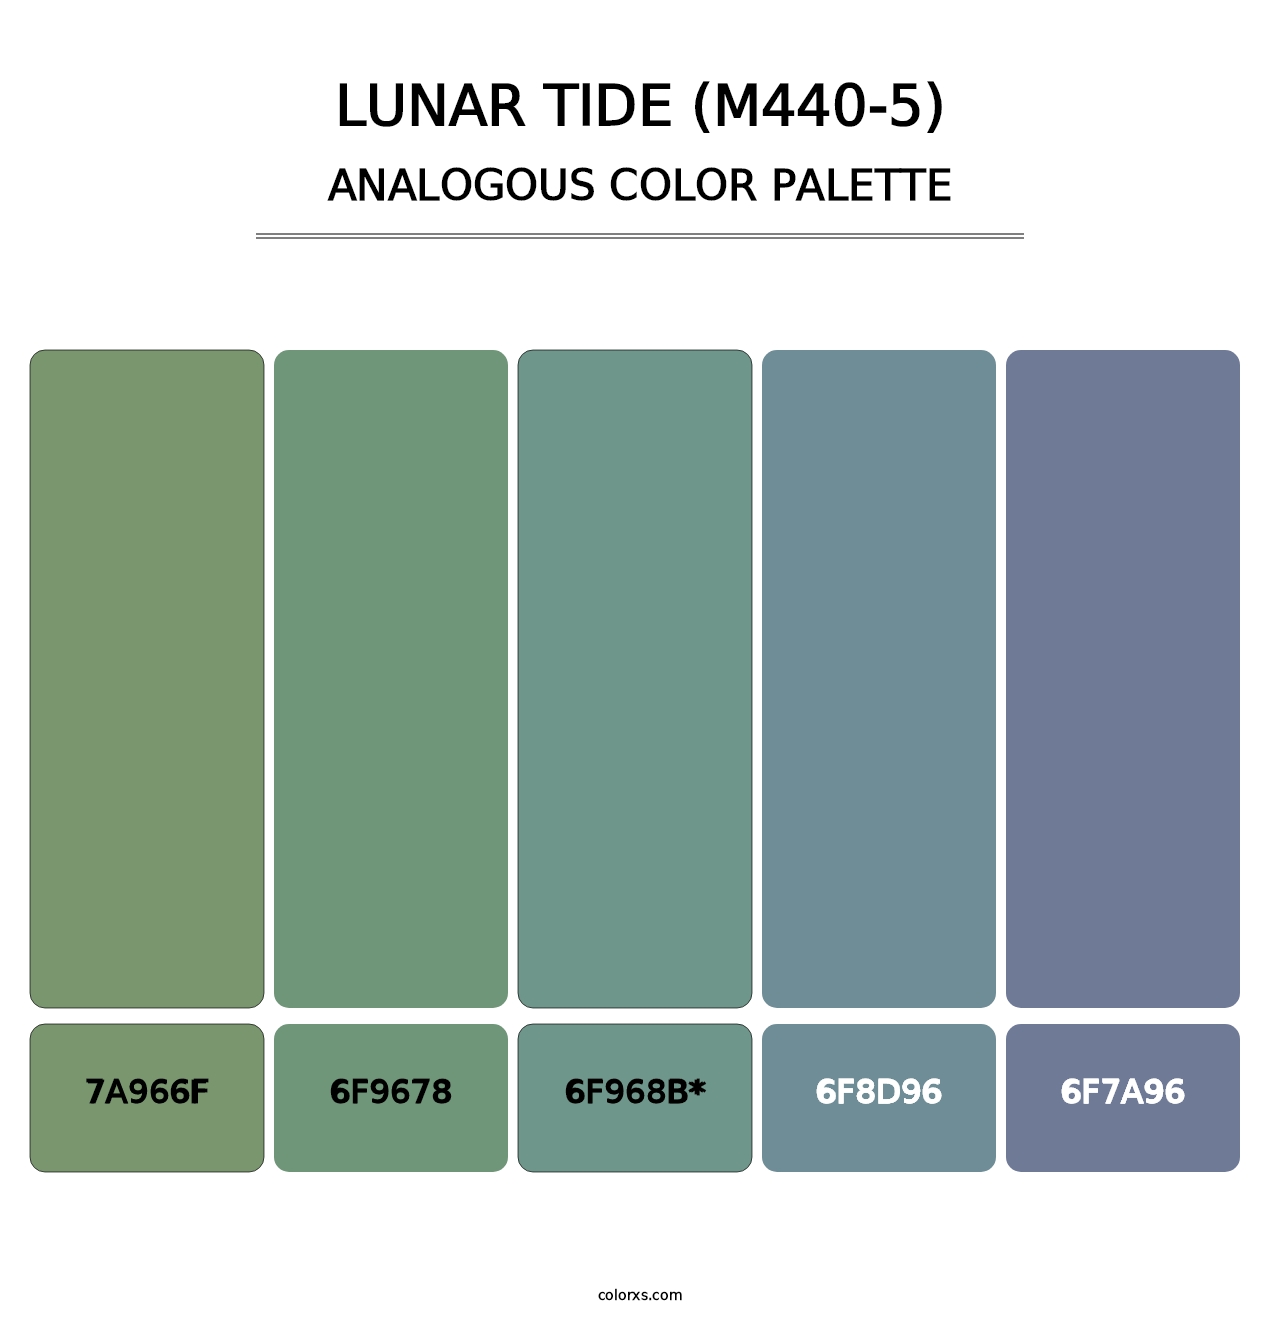 Lunar Tide (M440-5) - Analogous Color Palette